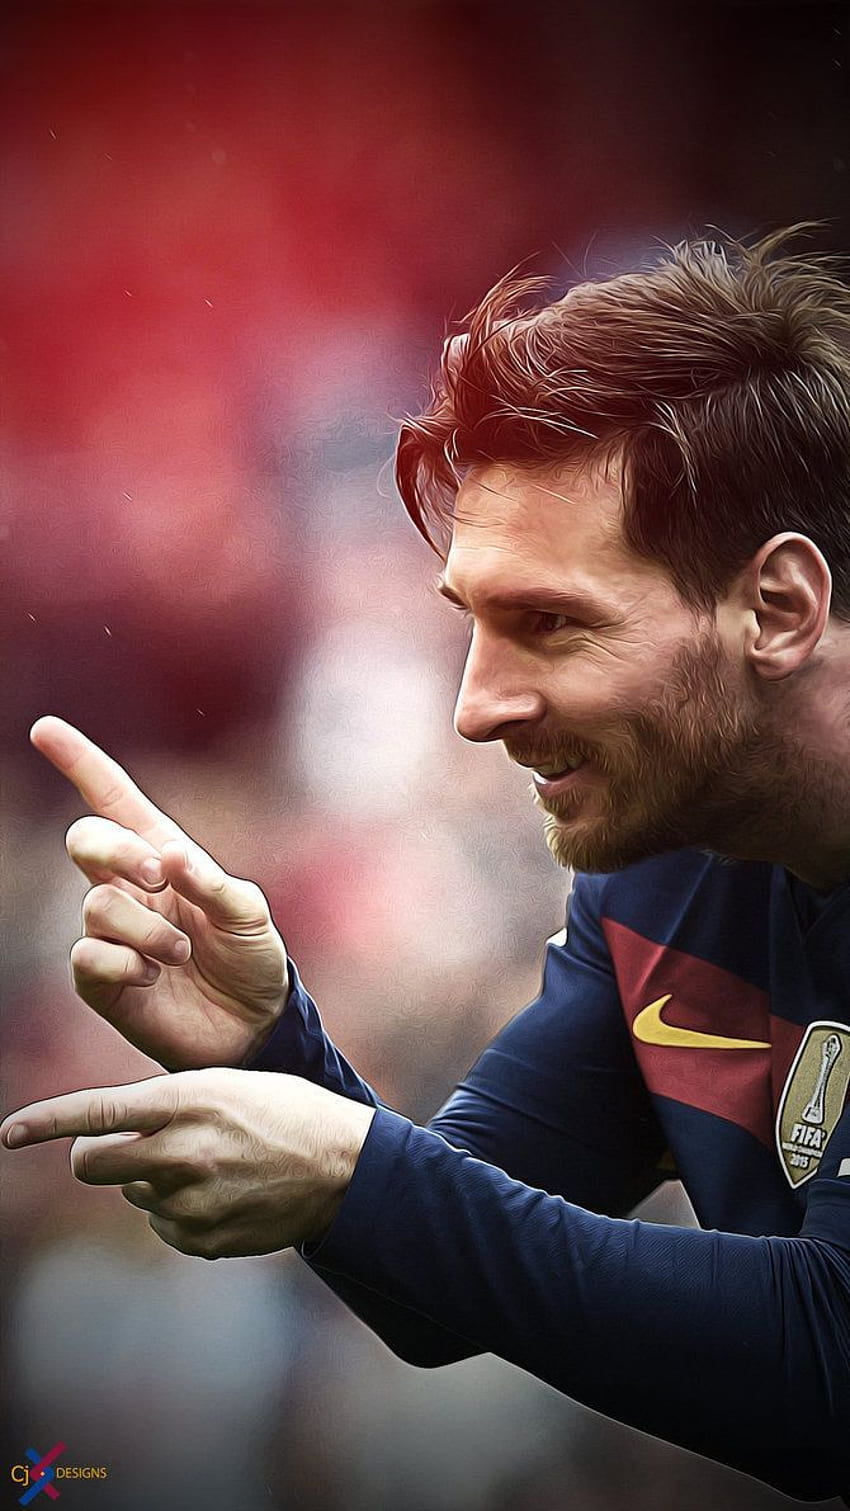 Messi With Beard HD phone wallpaper | Pxfuel (Messi with Beard phone wallpaper): Bạn đã bao giờ tưởng tượng Messi với râu phong cách cho một bức hình nền điện thoại chưa? Hình ảnh cầu thủ này với bộ râu ấn tượng sẽ khiến cho điện thoại của bạn trở nên đặc biệt hơn bao giờ hết. Hãy để Messi và bộ râu của anh ấy giúp bạn \